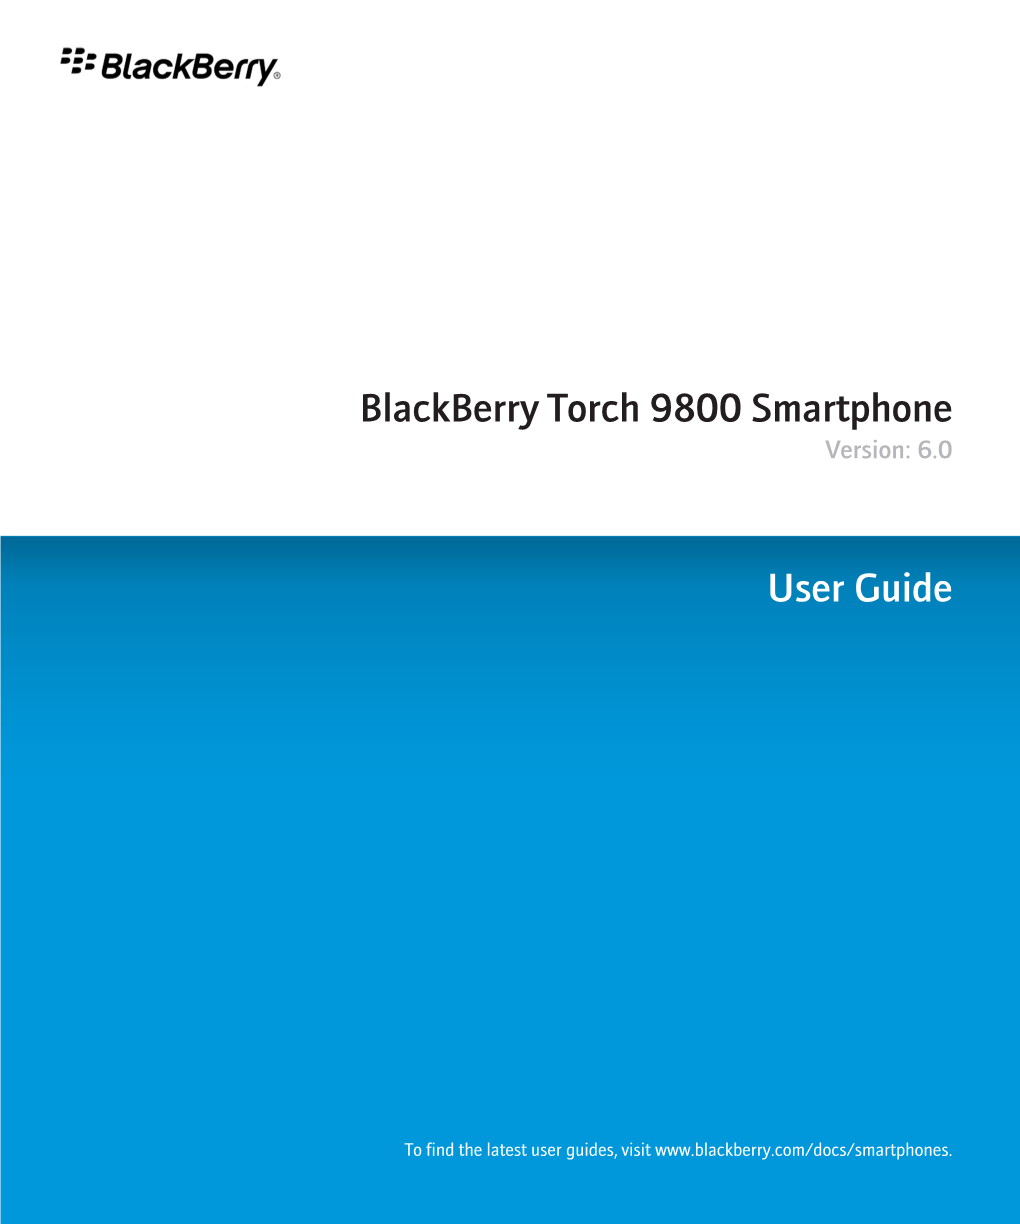 Blackberry Torch 9800 Smartphone Version: 6.0